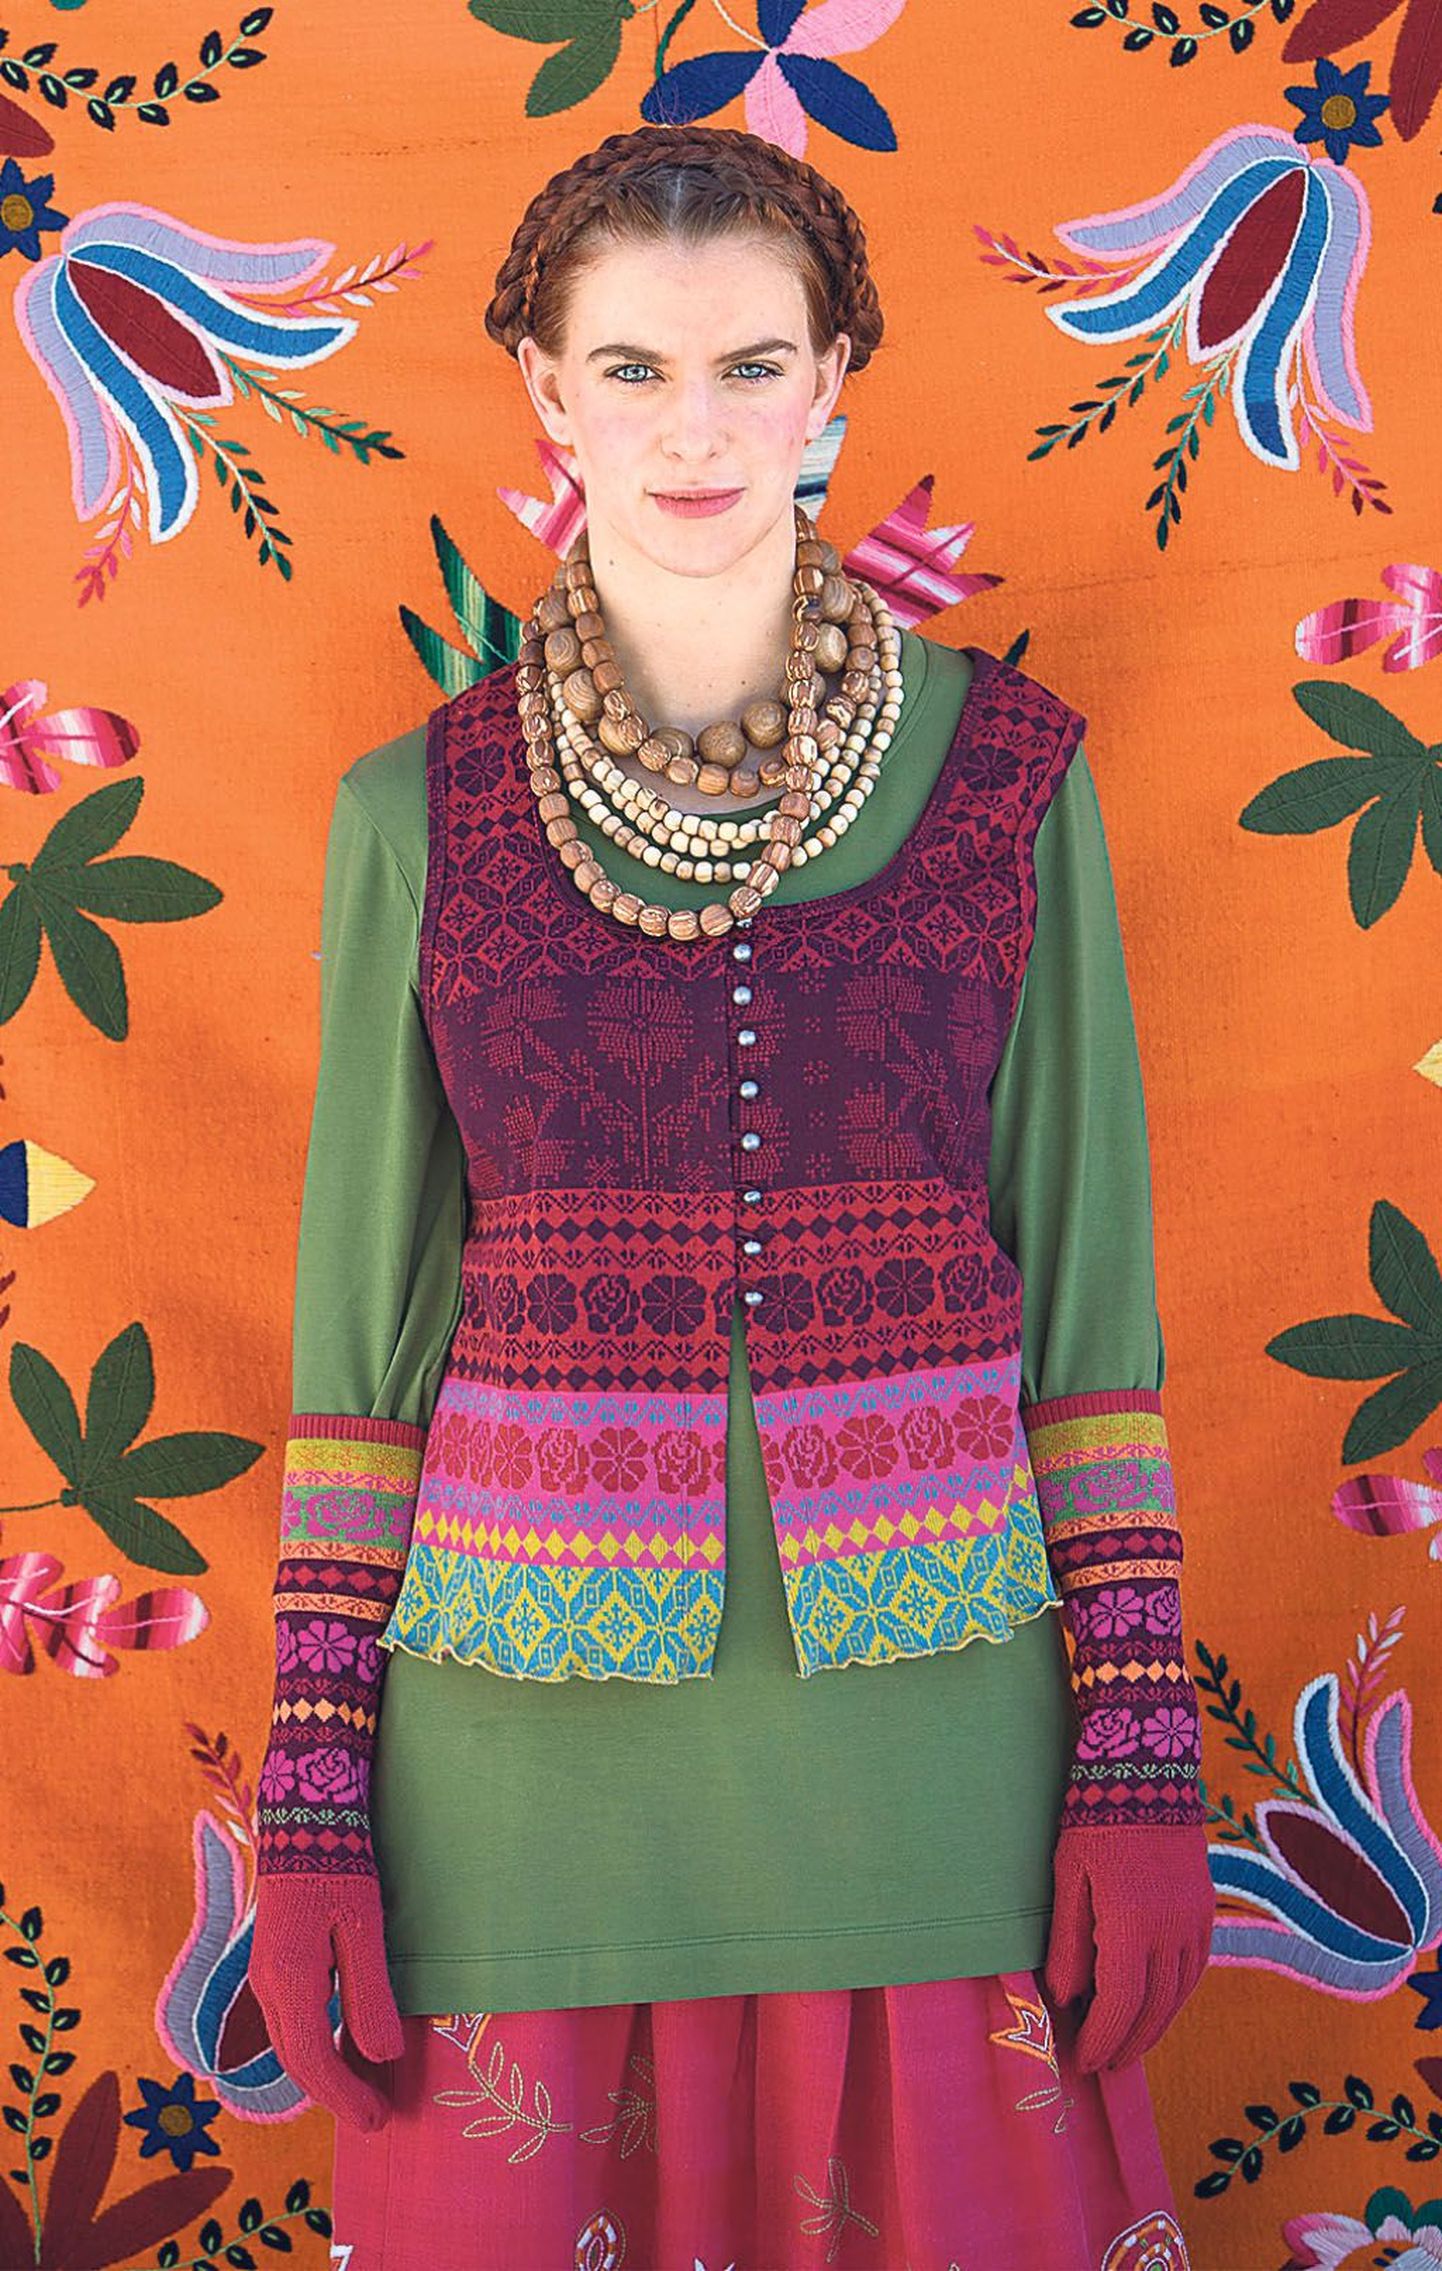 Rootsi tekstiilikunstnik Gudrun Sjödén leidis innustust Muhu-ainelistest mustritest.